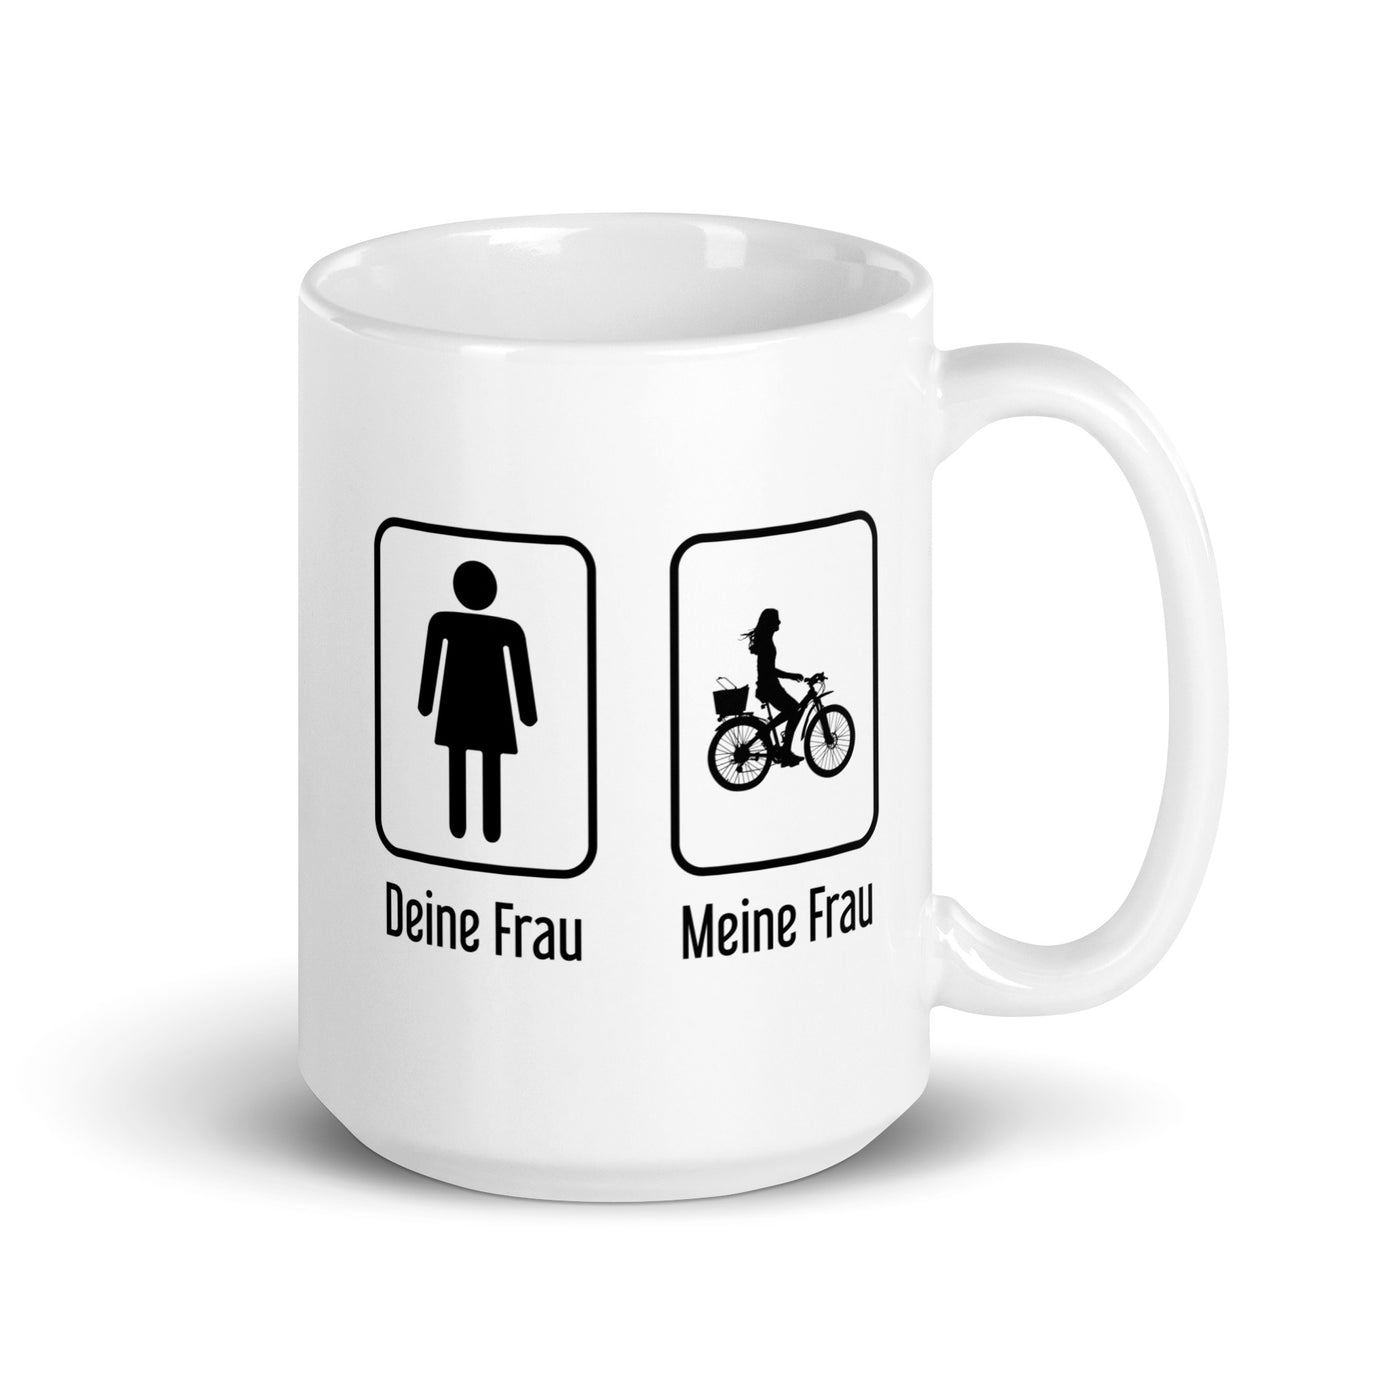 Deine Frau - Meine Frau - Tasse fahrrad 15oz